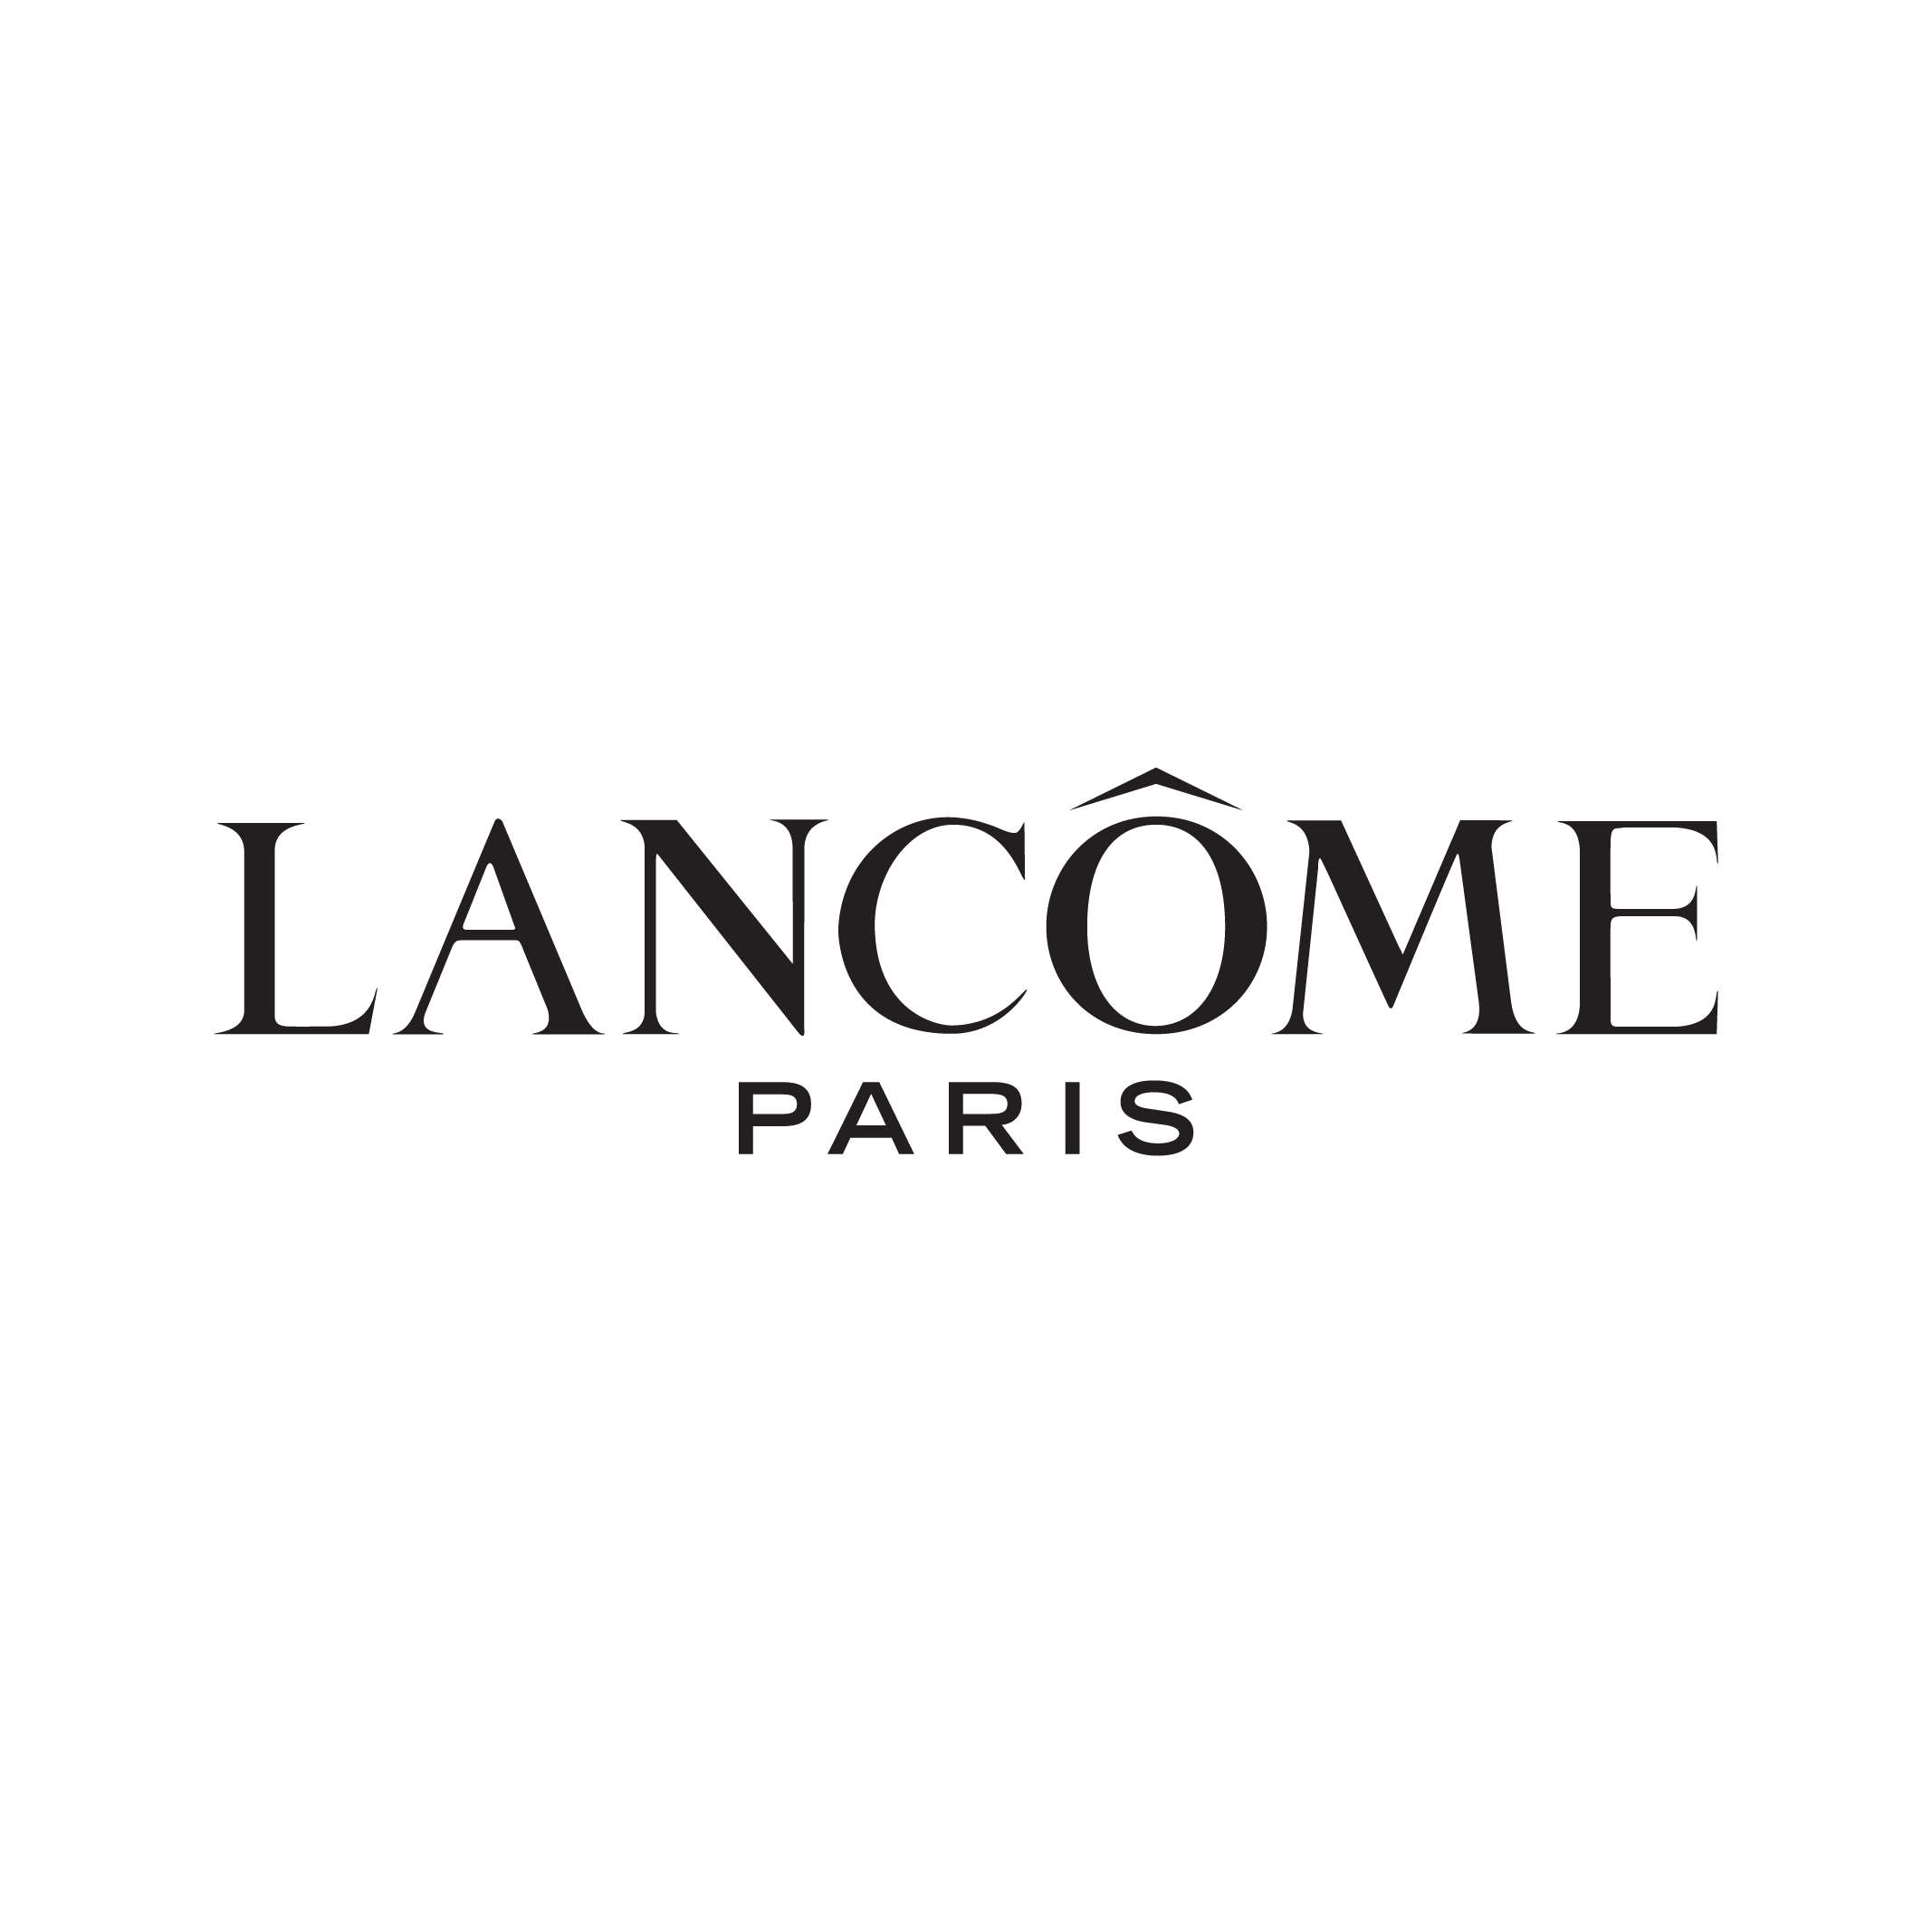 Lancome-Paris